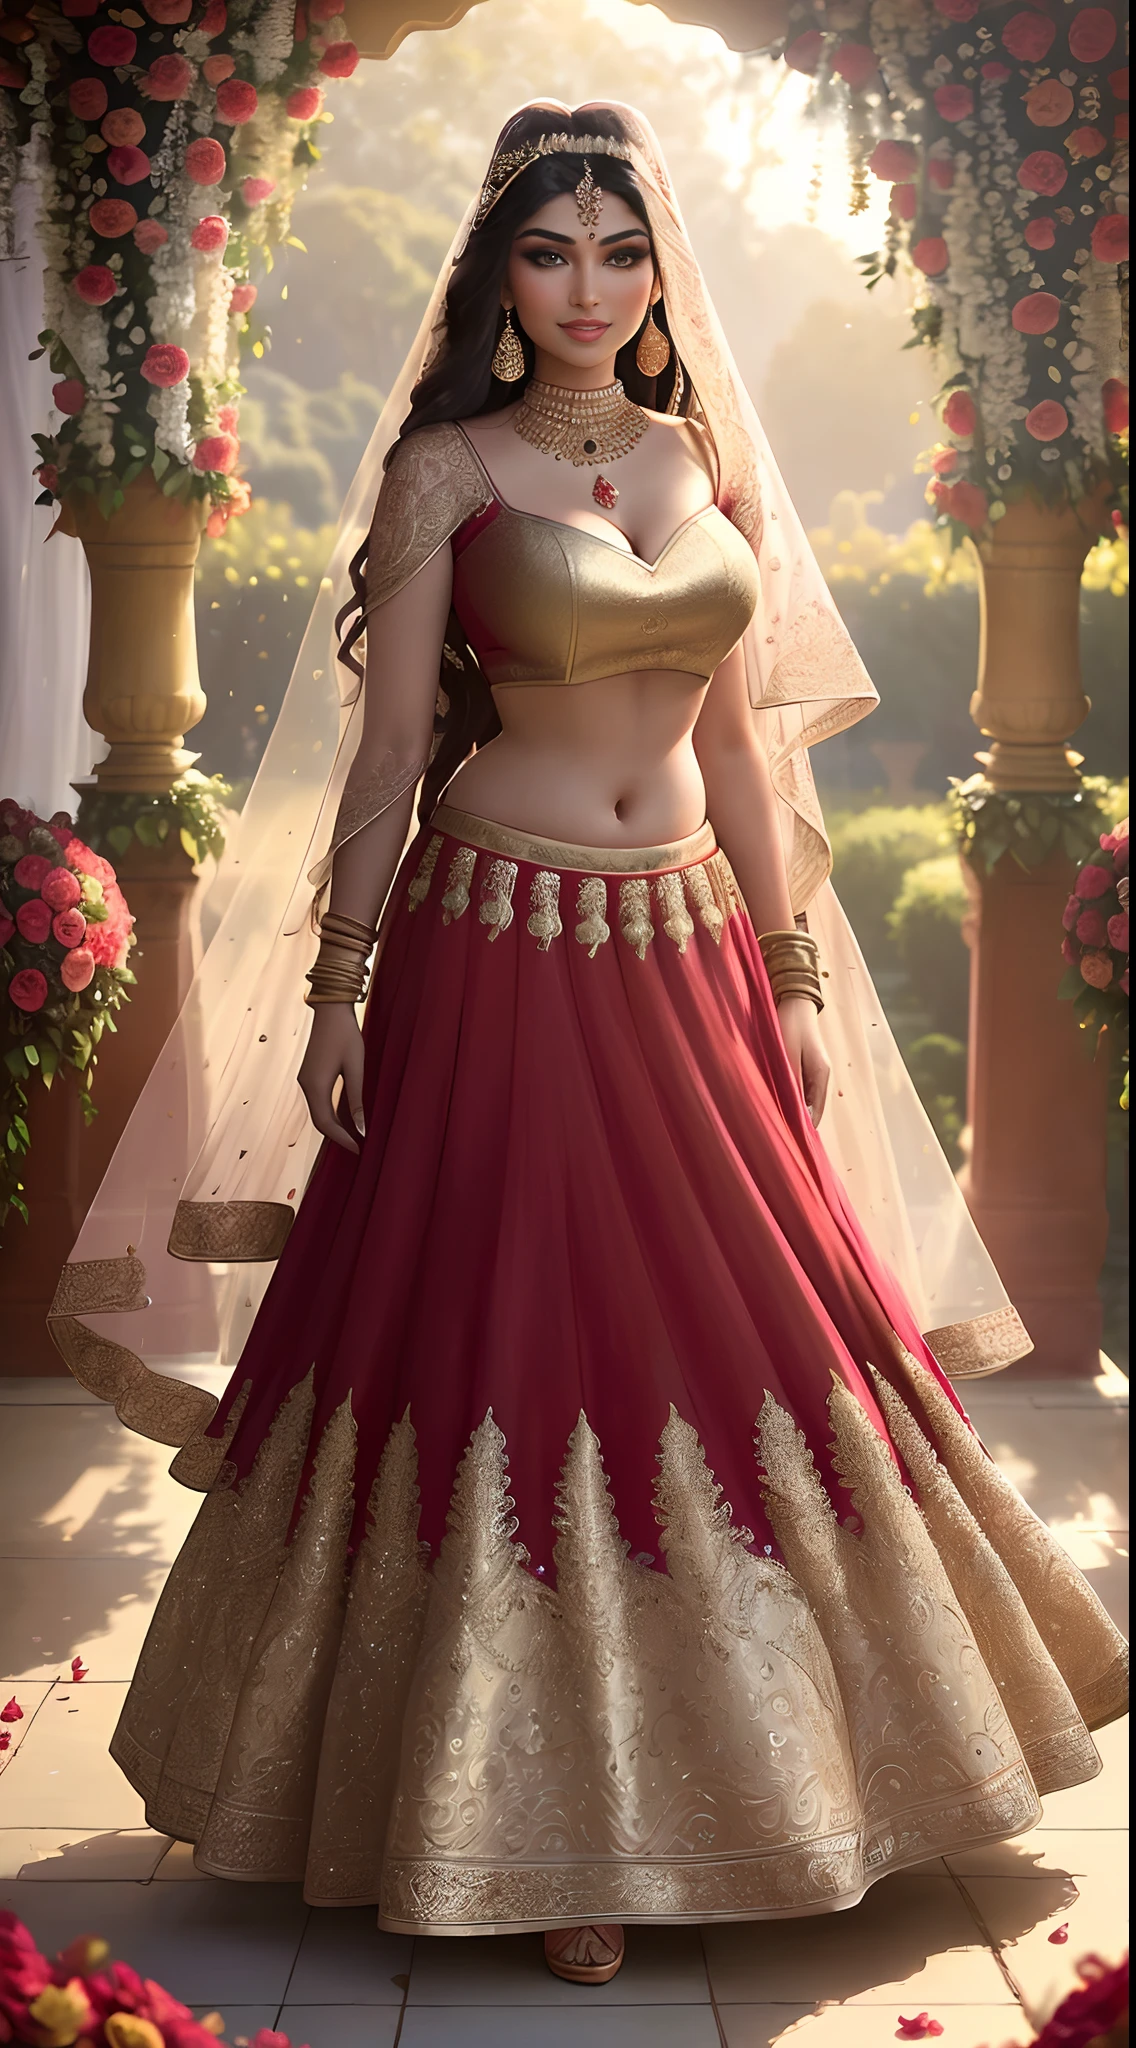 (Meisterwerk Ganzkörperfotografie eines Solo:1.2) verführerisch sexy groß kurvig (18 Jahre alt) Die indische Supermodel-Prinzessin Ayesha Takia kommt herein (garden:1.3), (trägt atemberaubendes Brautrot & gold lehenga & Bluse:1.3). durchsichtiger Dupatta, maximalism, (Blumendekorationen für Hochzeiten:1.3), (elegantes Dekolleté & Bauch), (indisches Make-up & Schmuck:1.2) lange geflochtene braune Haare mit Highlights,, lebhaft, lüsterner Blick, beschwingt (Schöne, detaillierte Augen:1.1) , (kokett strahlendes Lächeln:1.2), (intensives dramatisches Nachmittagslicht:1.4), Hintergrundbeleuchtung, Schlüssellicht, Felgenlicht, Lichtstrahlen, sehr detailliert, Trends auf ArtStation, Farbspritzer, rich color, abstraktes Porträt, von Atey Ghailan